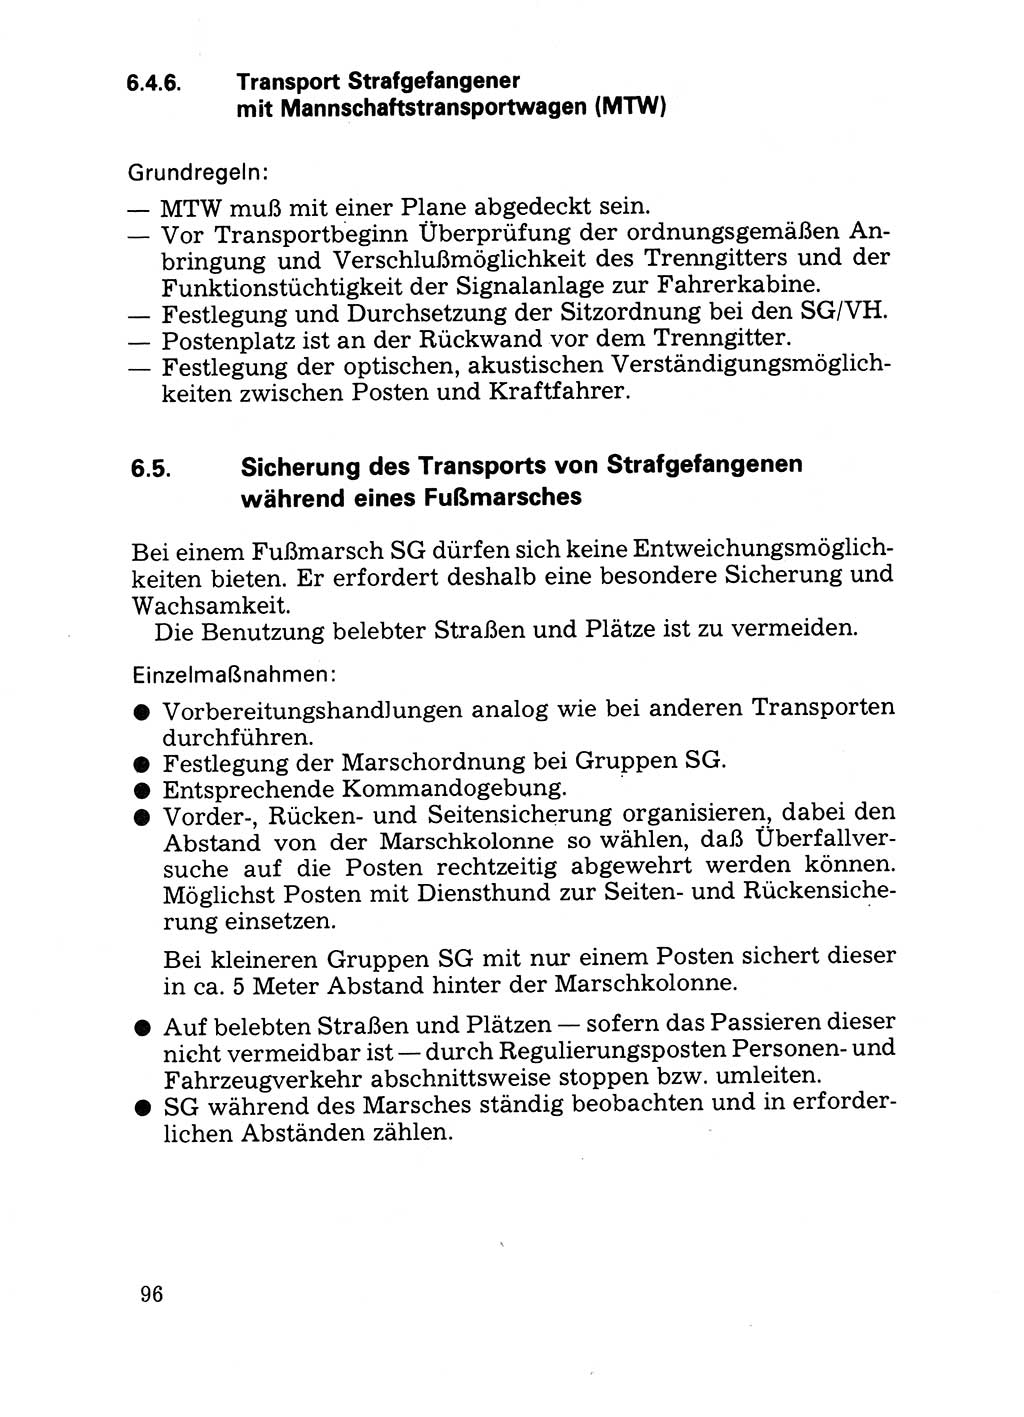 Handbuch für operative Dienste, Abteilung Strafvollzug (SV) [Ministerium des Innern (MdI) Deutsche Demokratische Republik (DDR)] 1981, Seite 96 (Hb. op. D. Abt. SV MdI DDR 1981, S. 96)